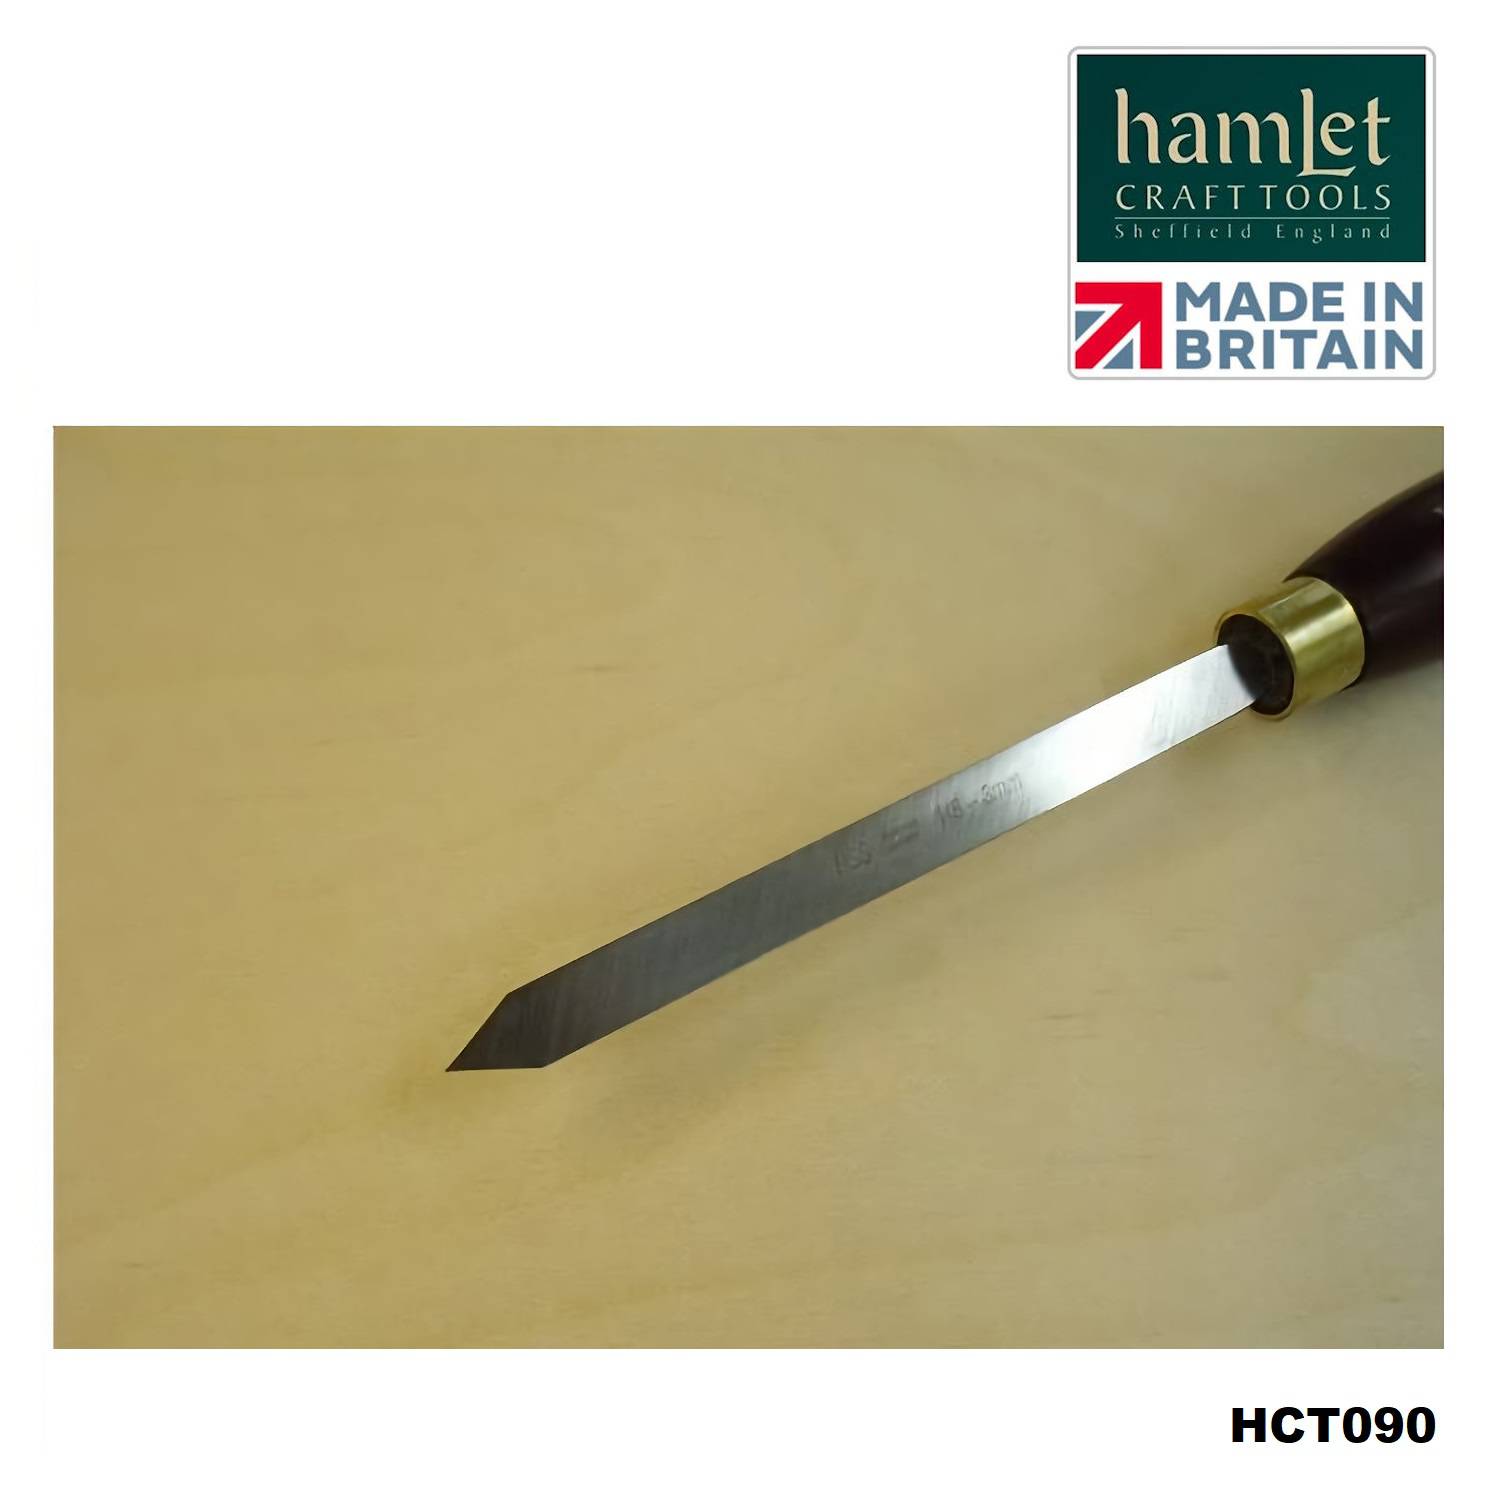 afsteekbeitel-HCT090-Hamlet